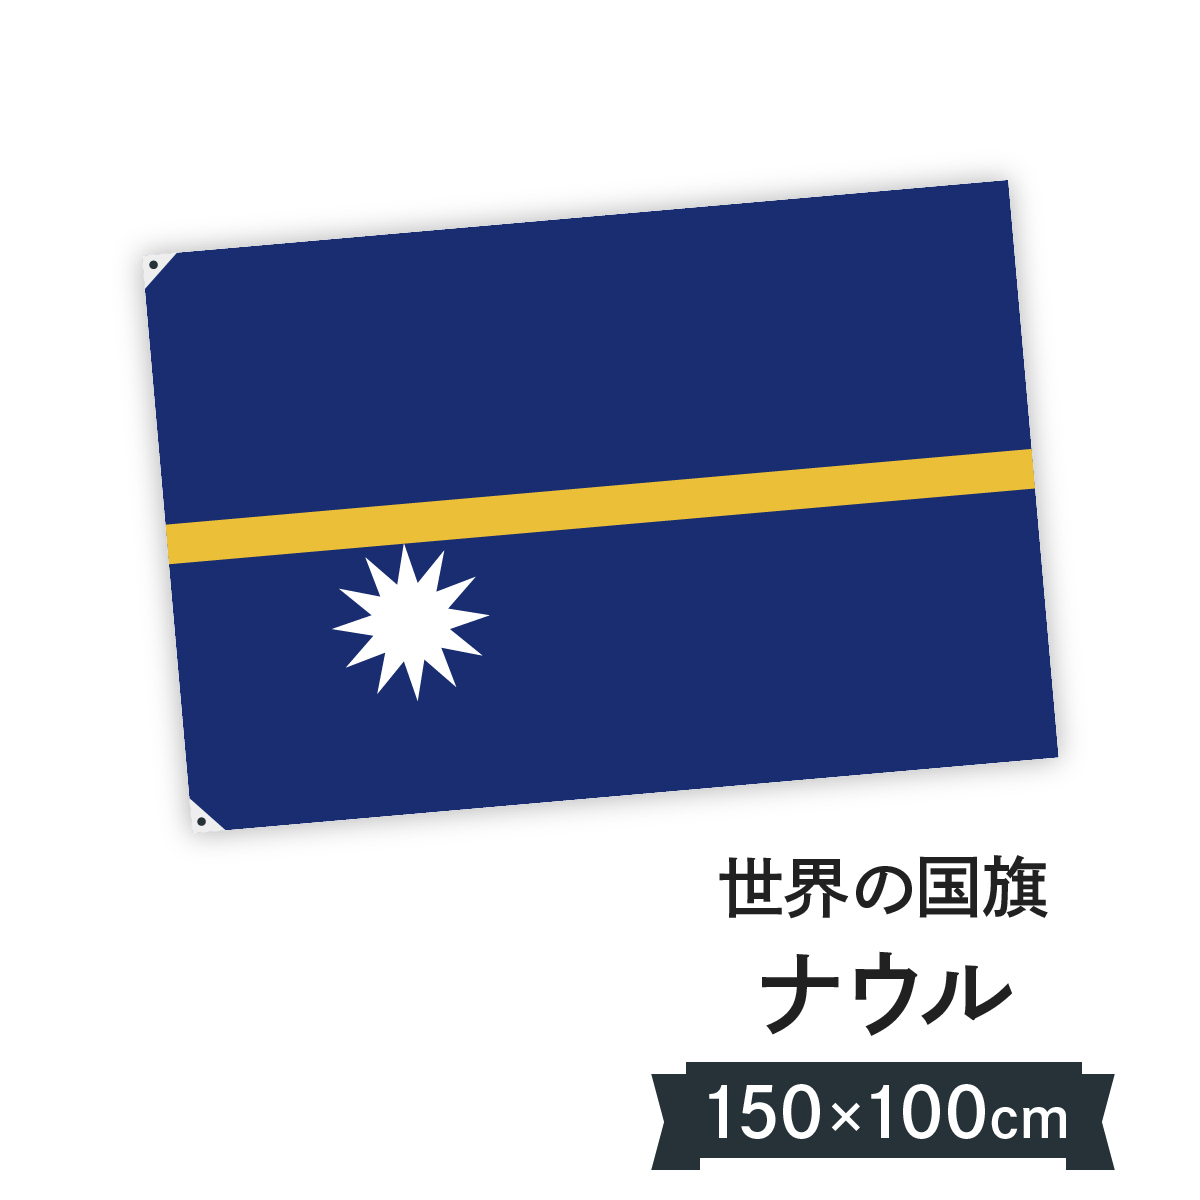 楽天市場 ナウル共和国 国旗 W150cm H100cm グッズプロ